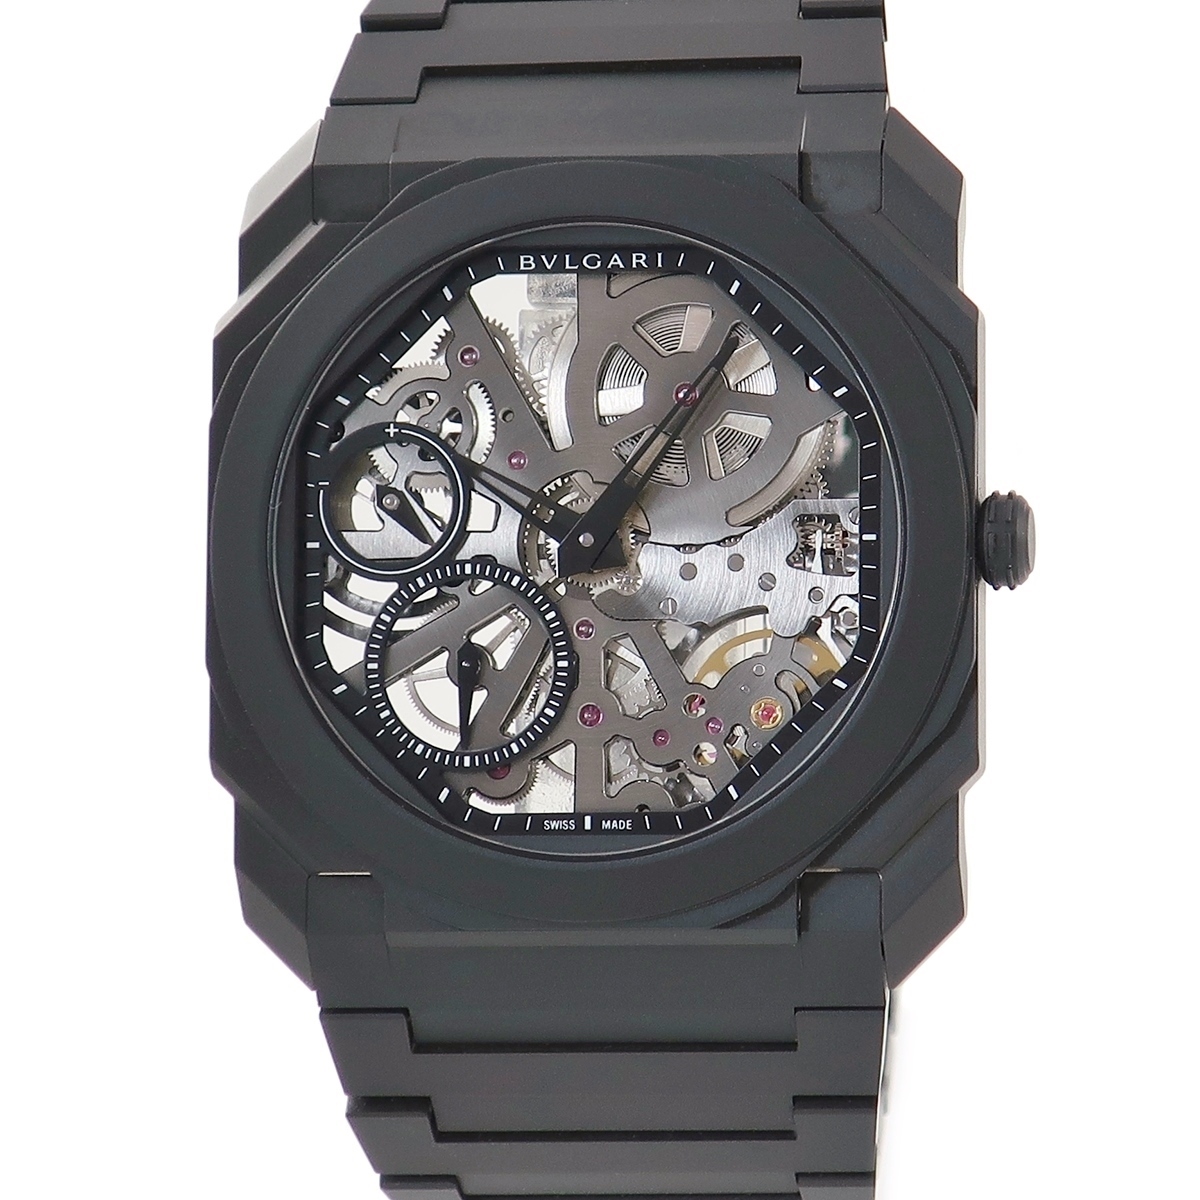 【3年保証】 ブルガリ オクト フィニッシモ スケルトン 103126 未使用 極薄 軽量 黒 パワーリザーブ 手巻き メンズ 腕時計